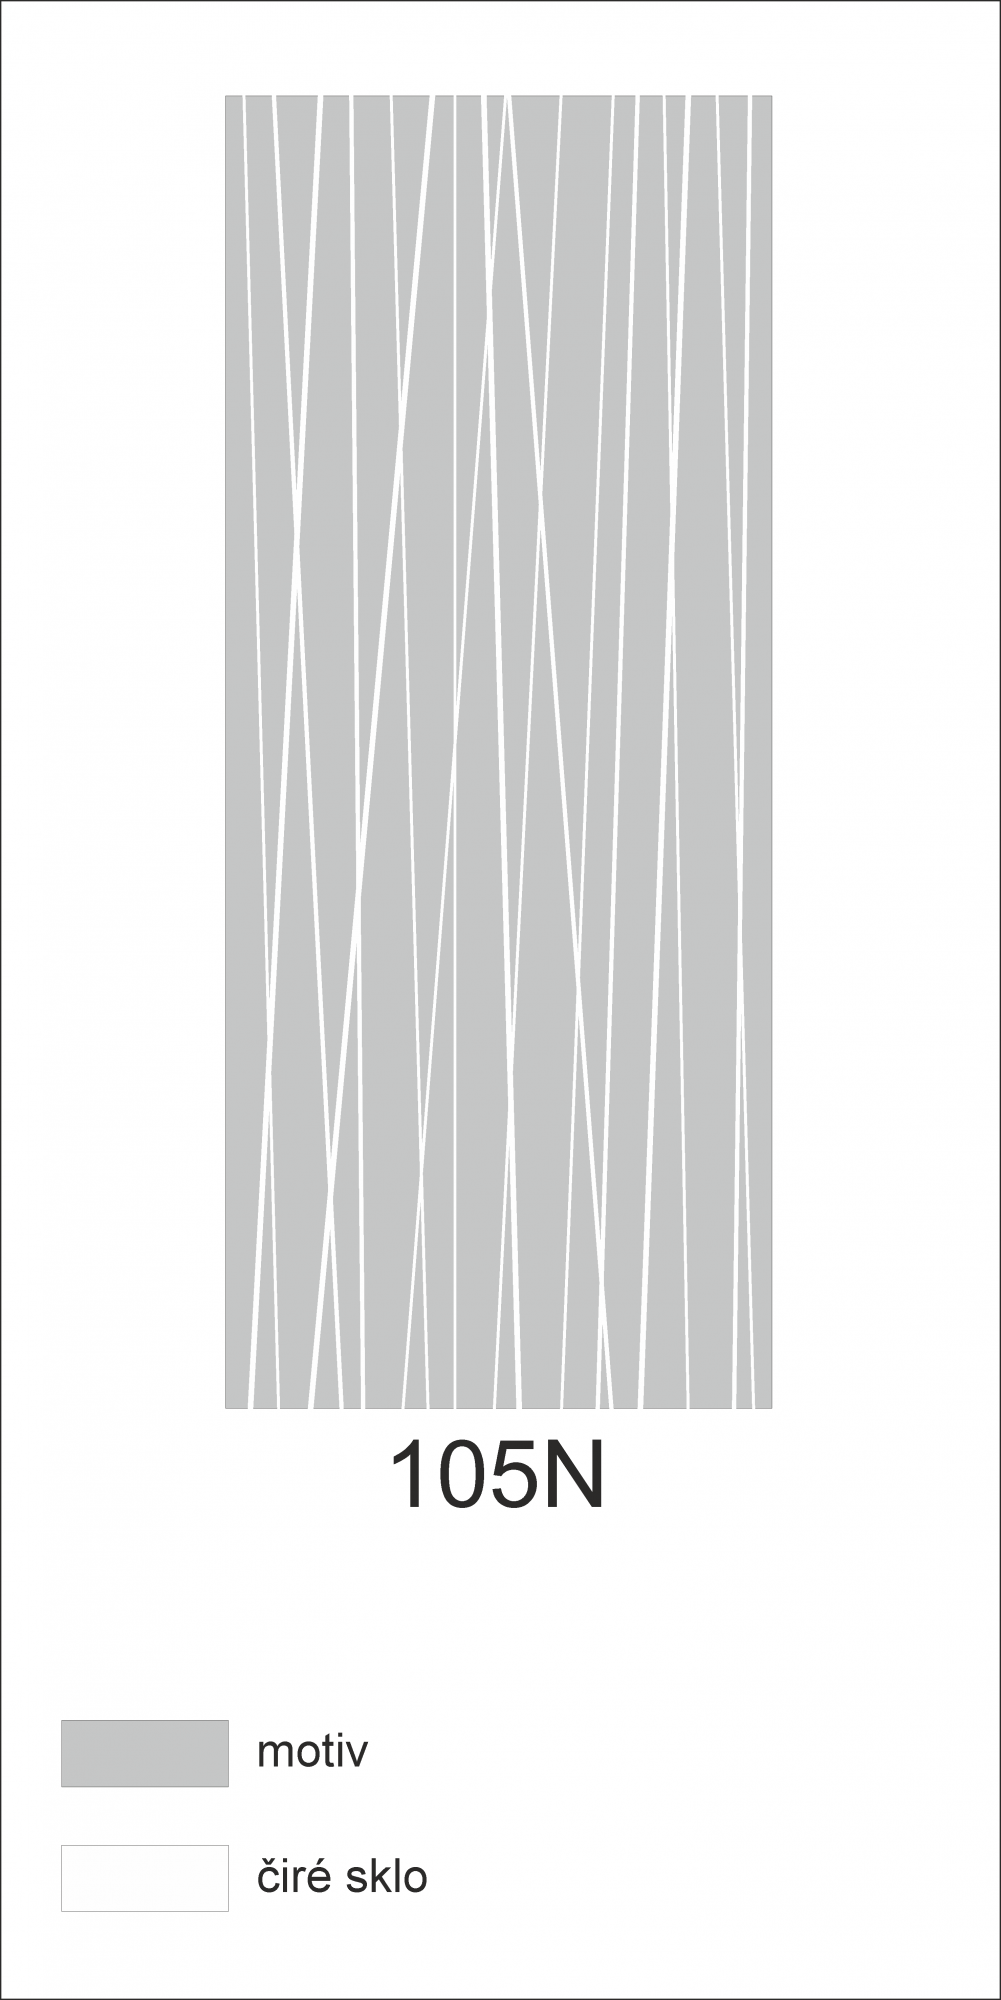 Možný motiv na skleněných dveřích nebo skleněných stěnách 105N - svislé čáry